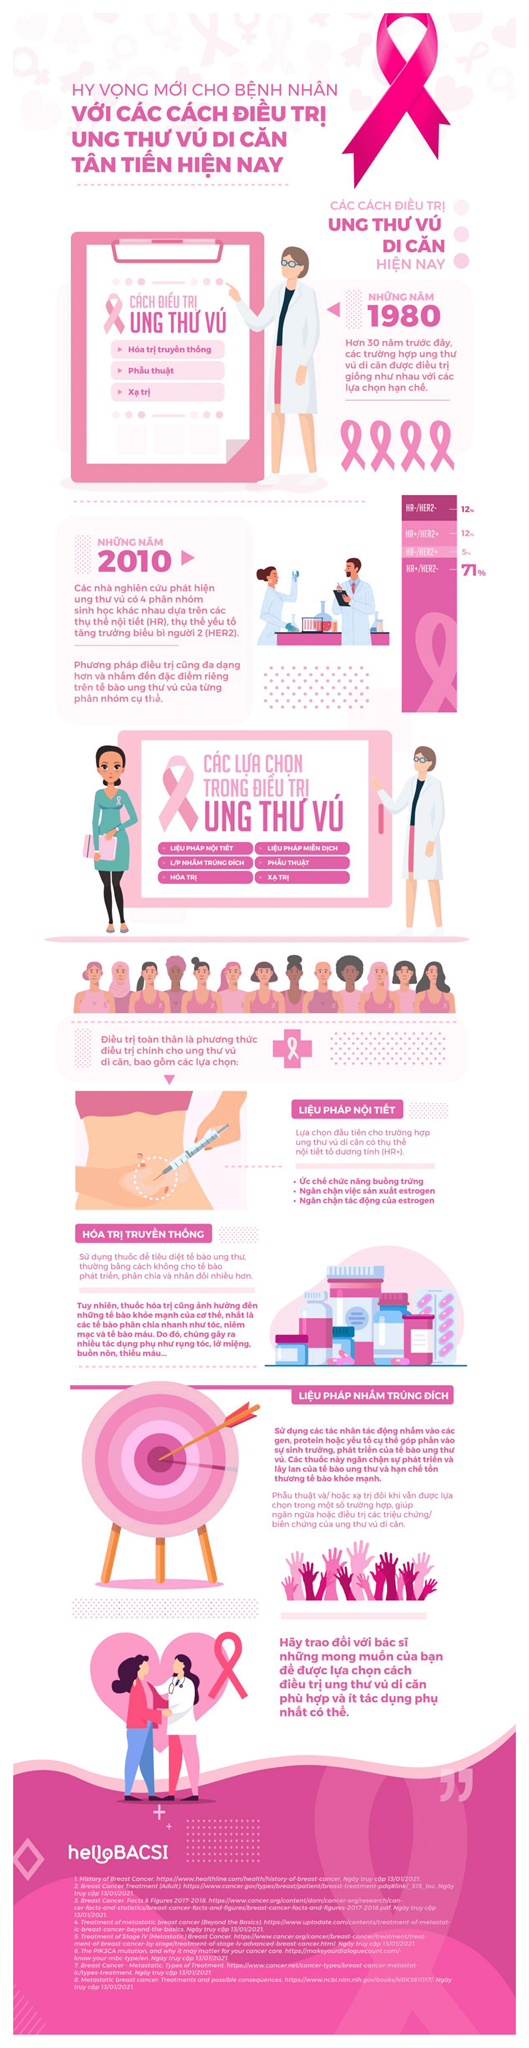 [Infographic] Hy vọng mới cho bệnh nhân với các cách điều trị ung thư vú di căn tân tiến hiện nay